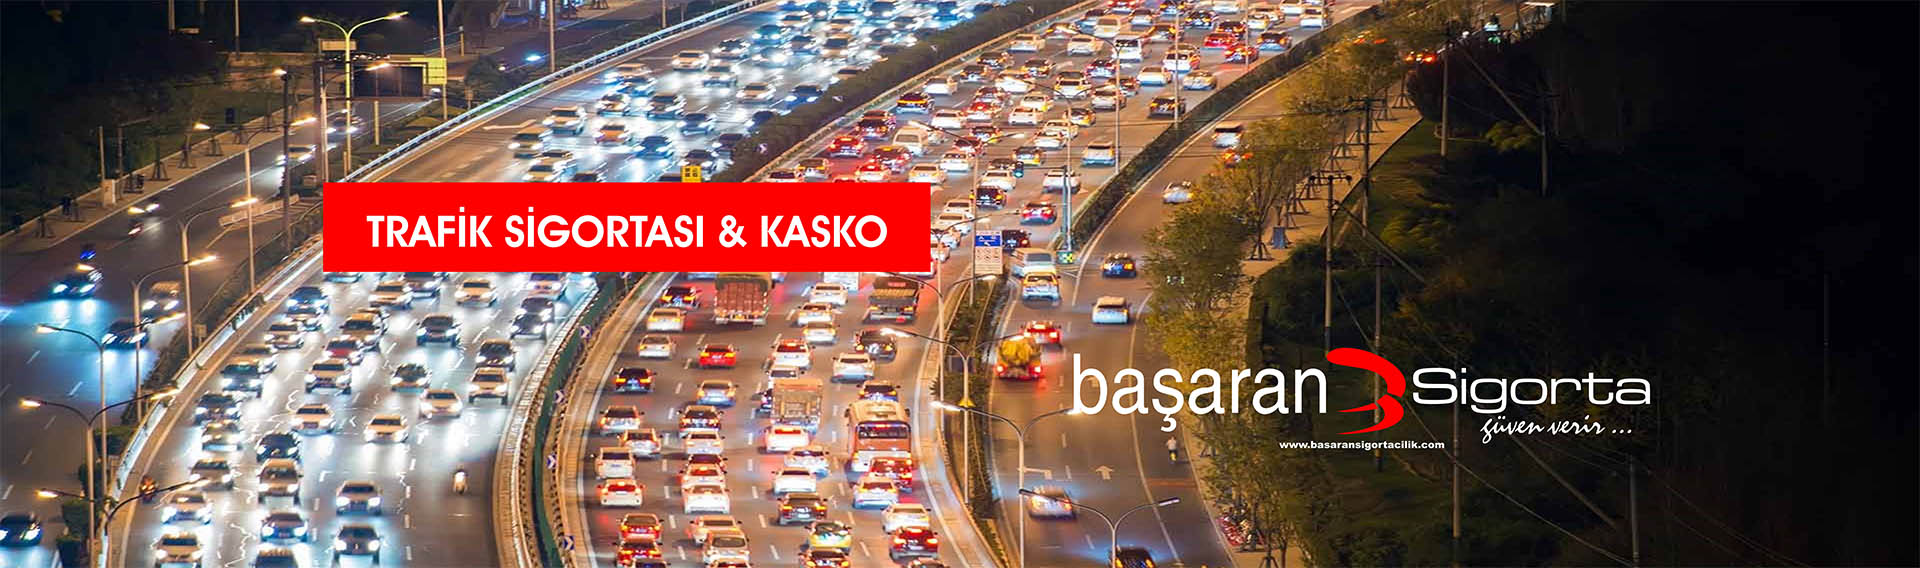 Trafik Sigortası & Kasko